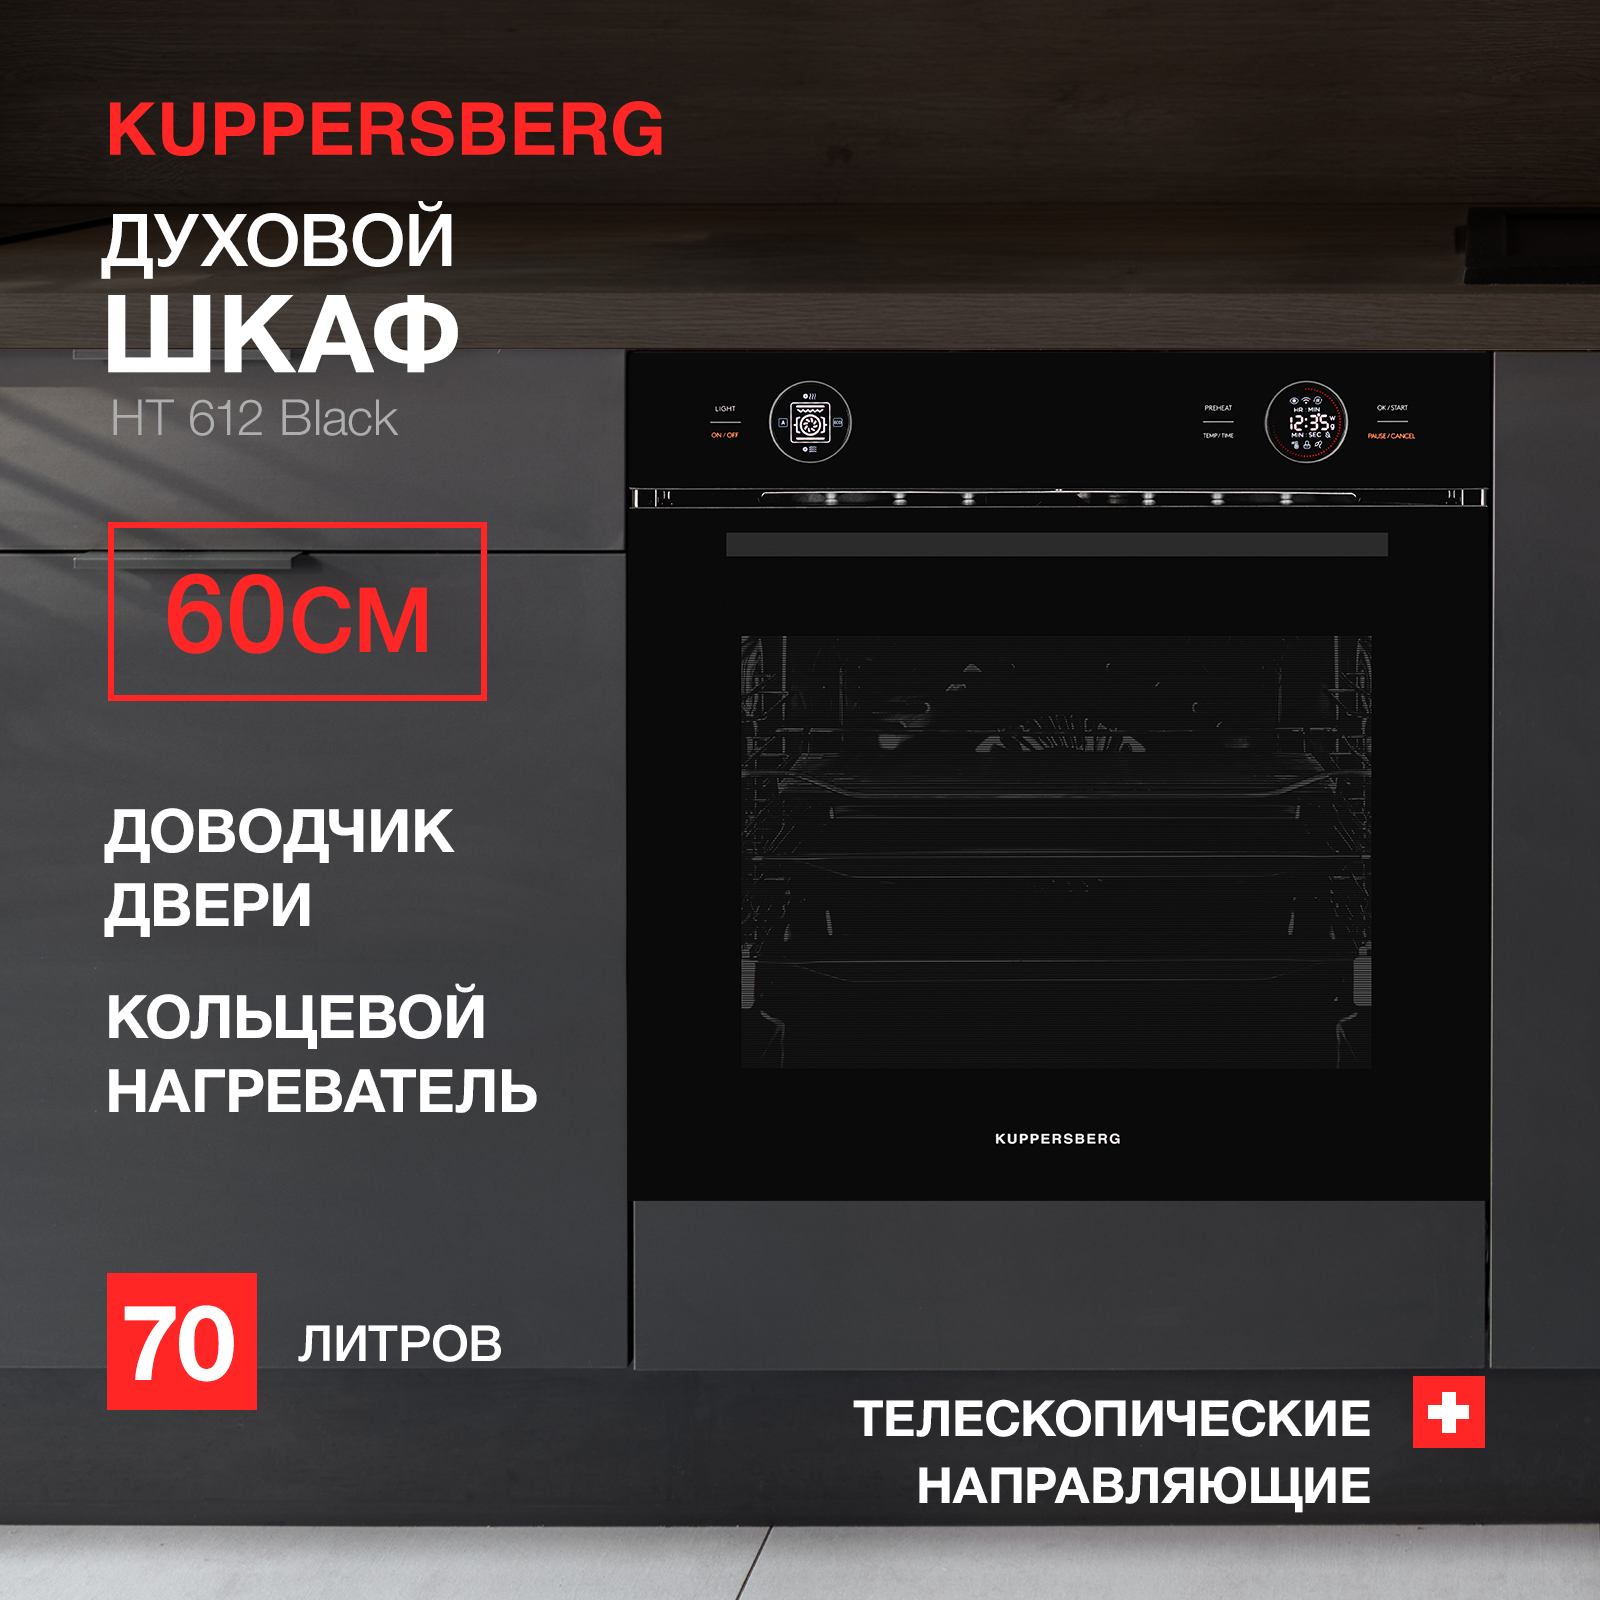 Встраиваемый электрический духовой шкаф KUPPERSBERG HT 612 Black, купить в Москве, цены в интернет-магазинах на Мегамаркет